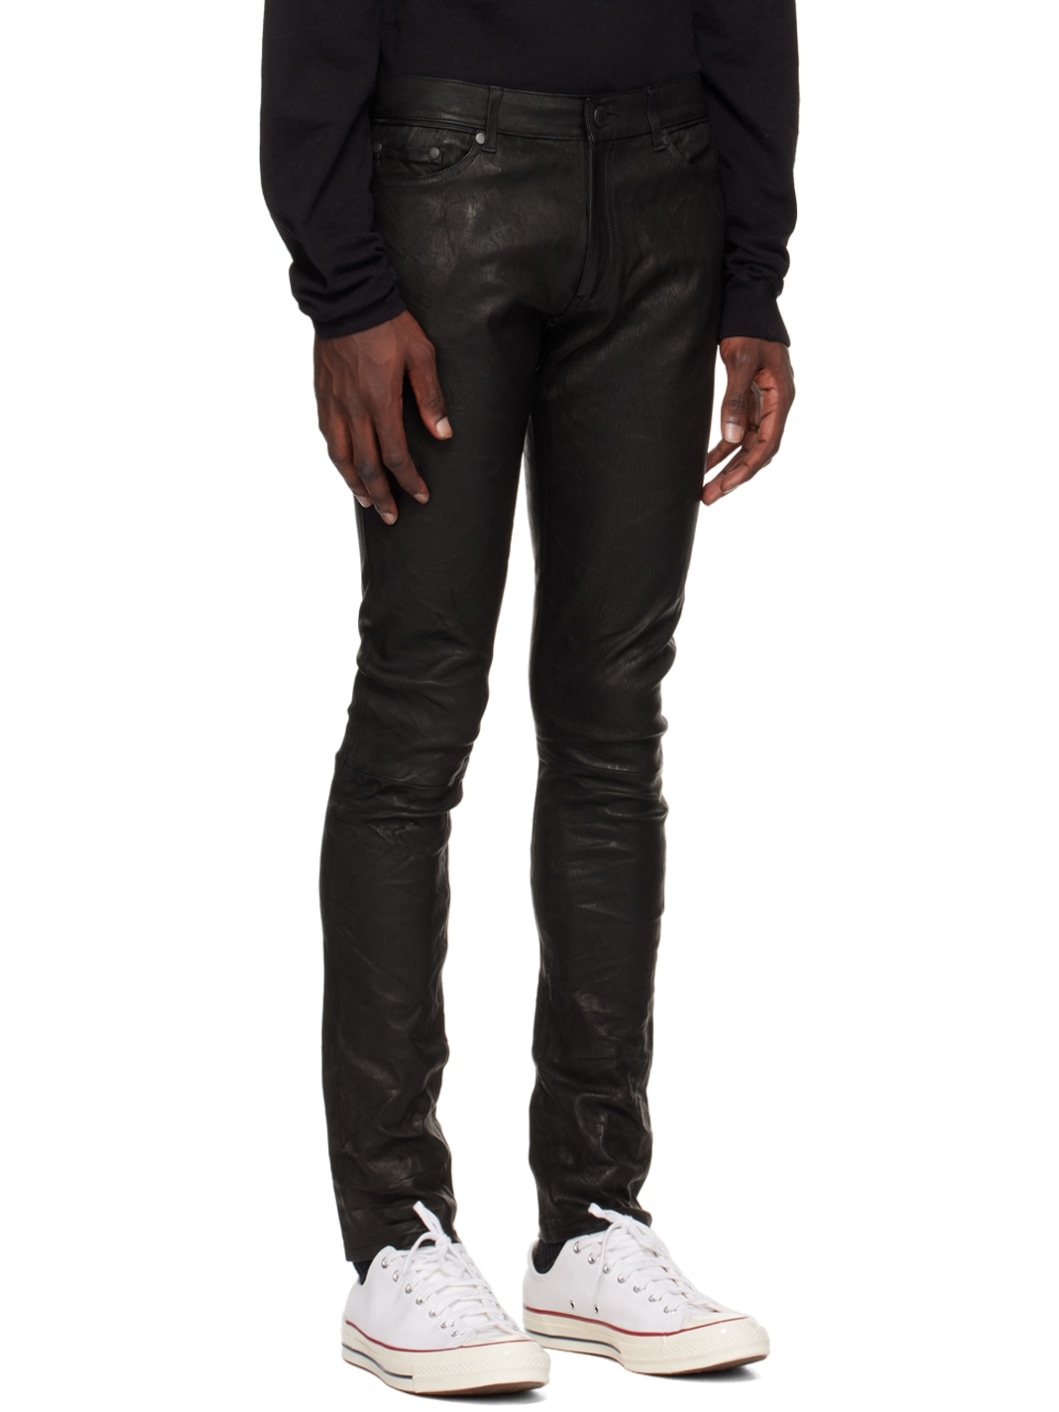 Black Cast 2 Leather Pants - 2